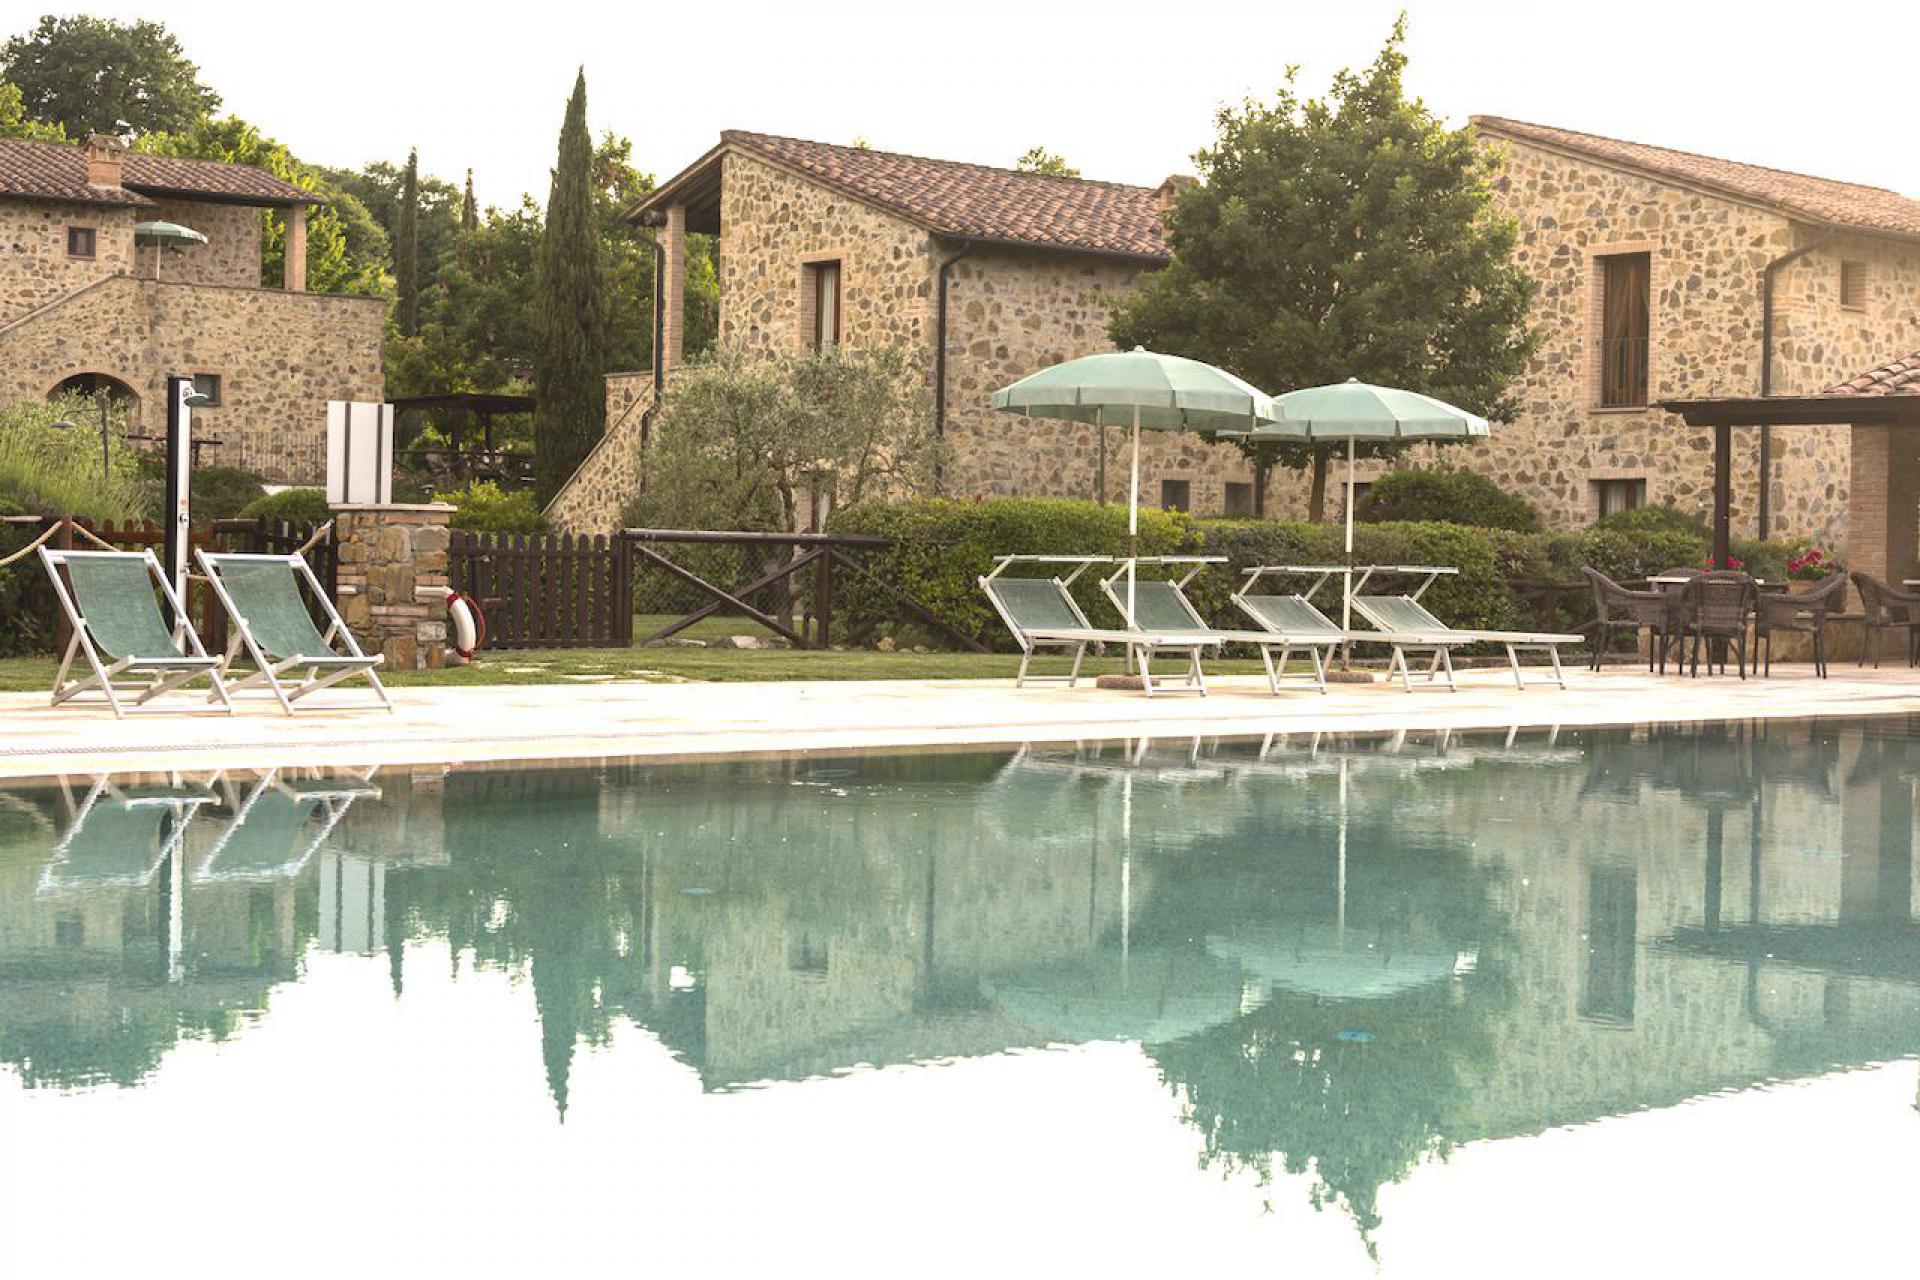 Resort per famiglie nel cuore della Toscana